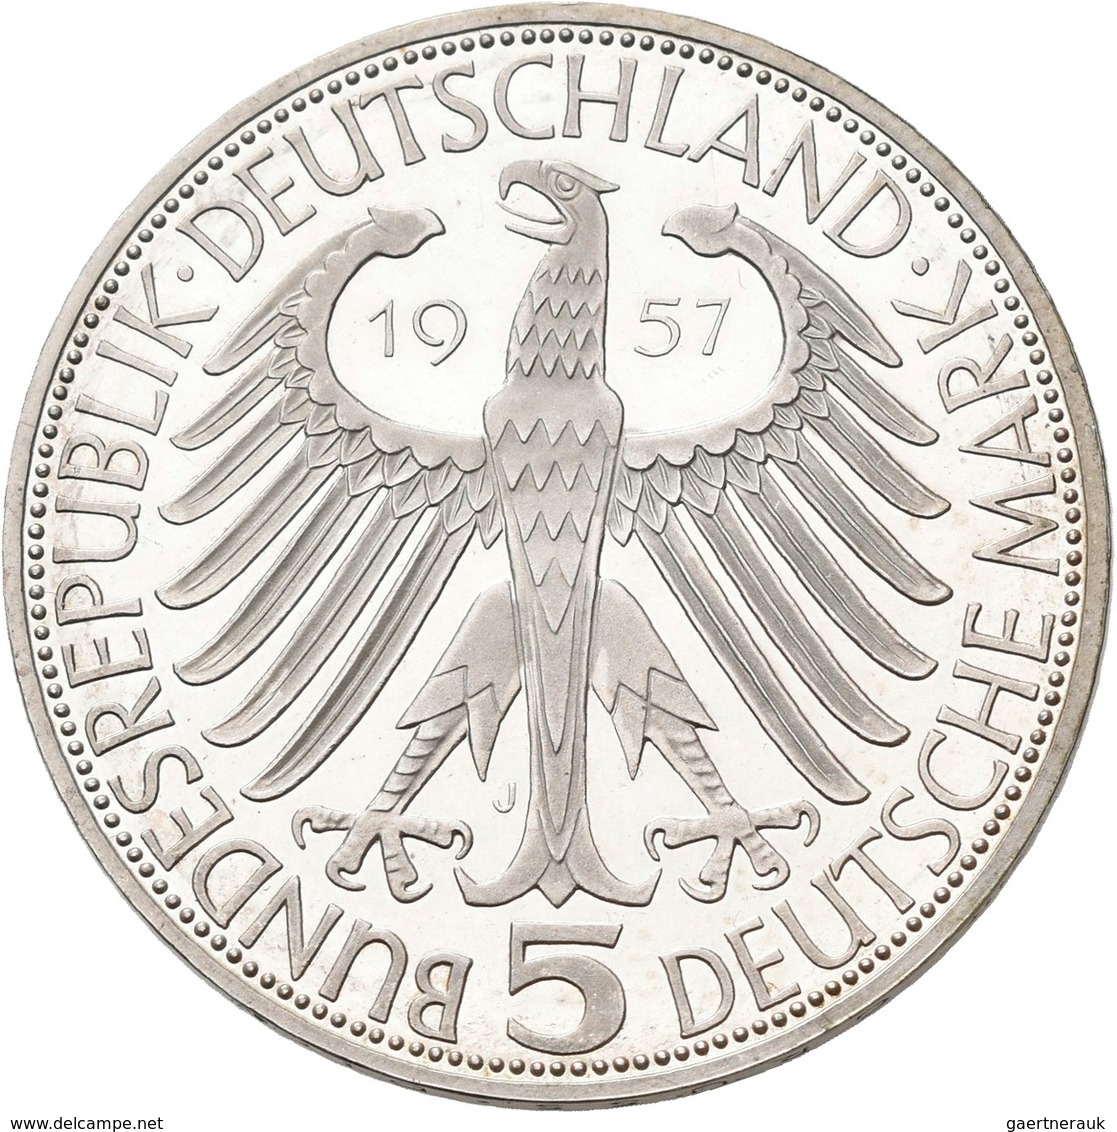 Bundesrepublik Deutschland 1948-2001: Die ersten Vier. Von 5 DM Germanisches Museum, J. 388 bis 5 DM